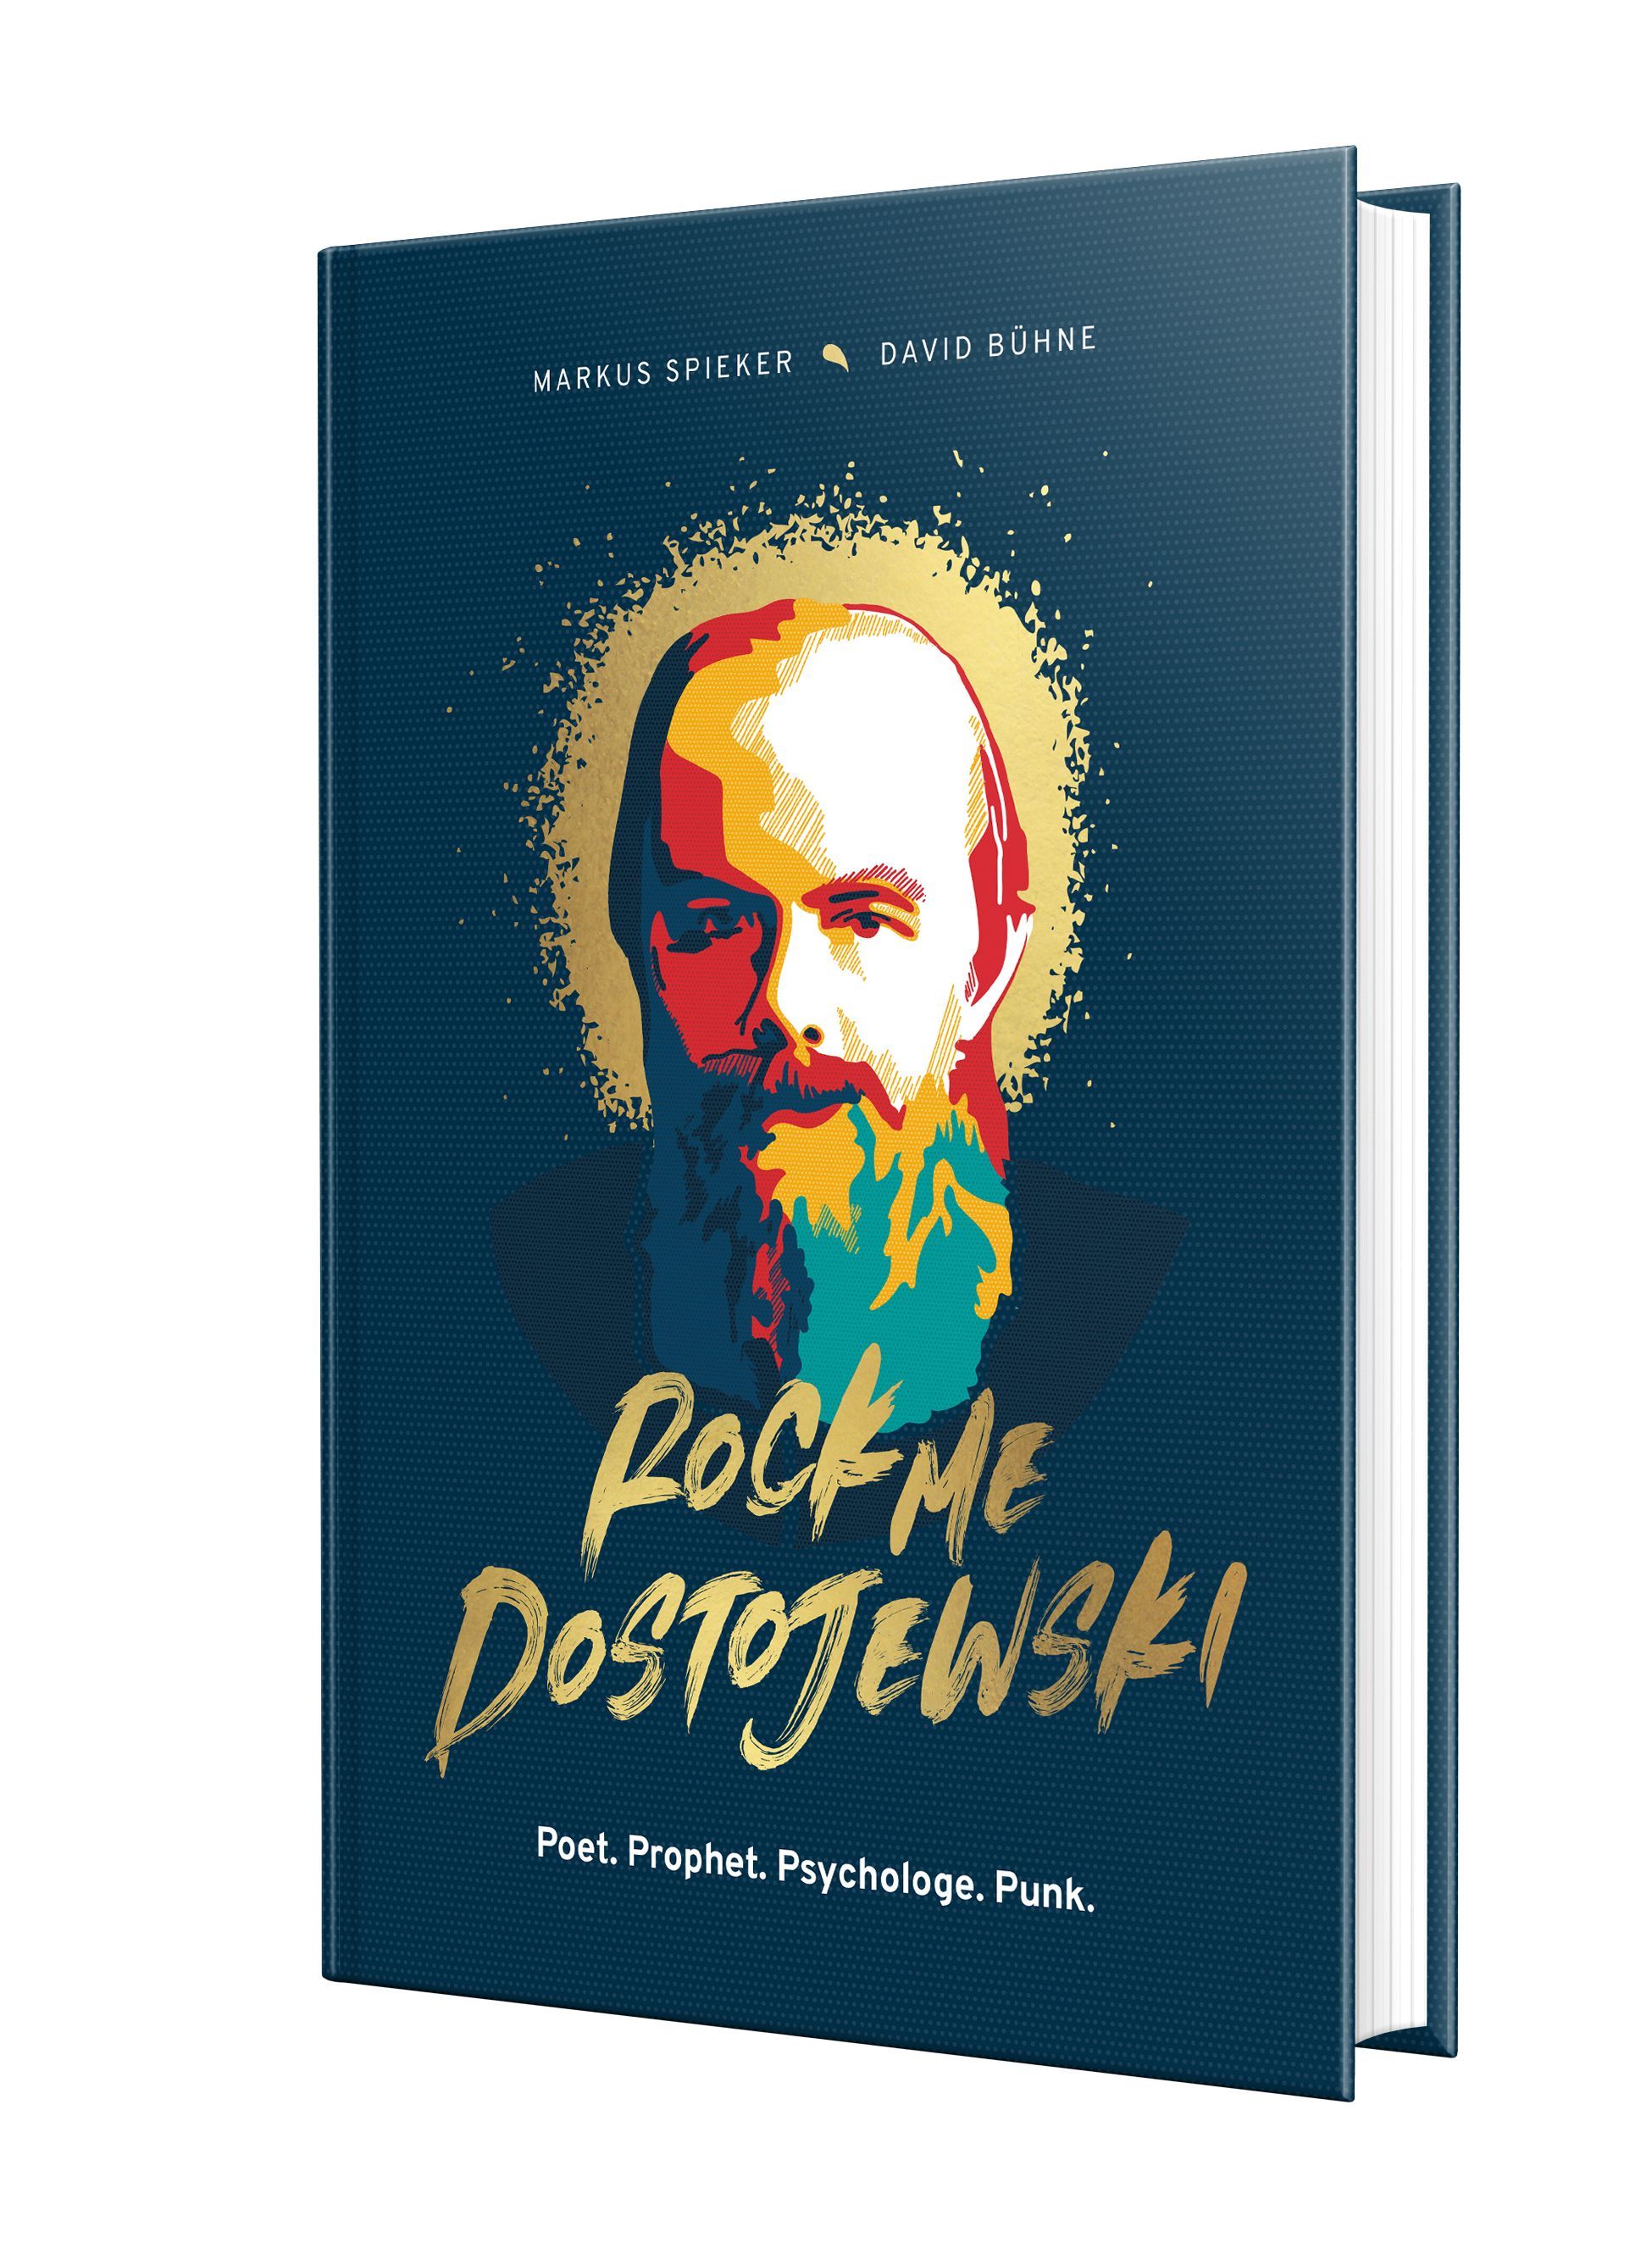 Rock me, Dostojewski!|Poet. Prophet. Psychologe. Punk.